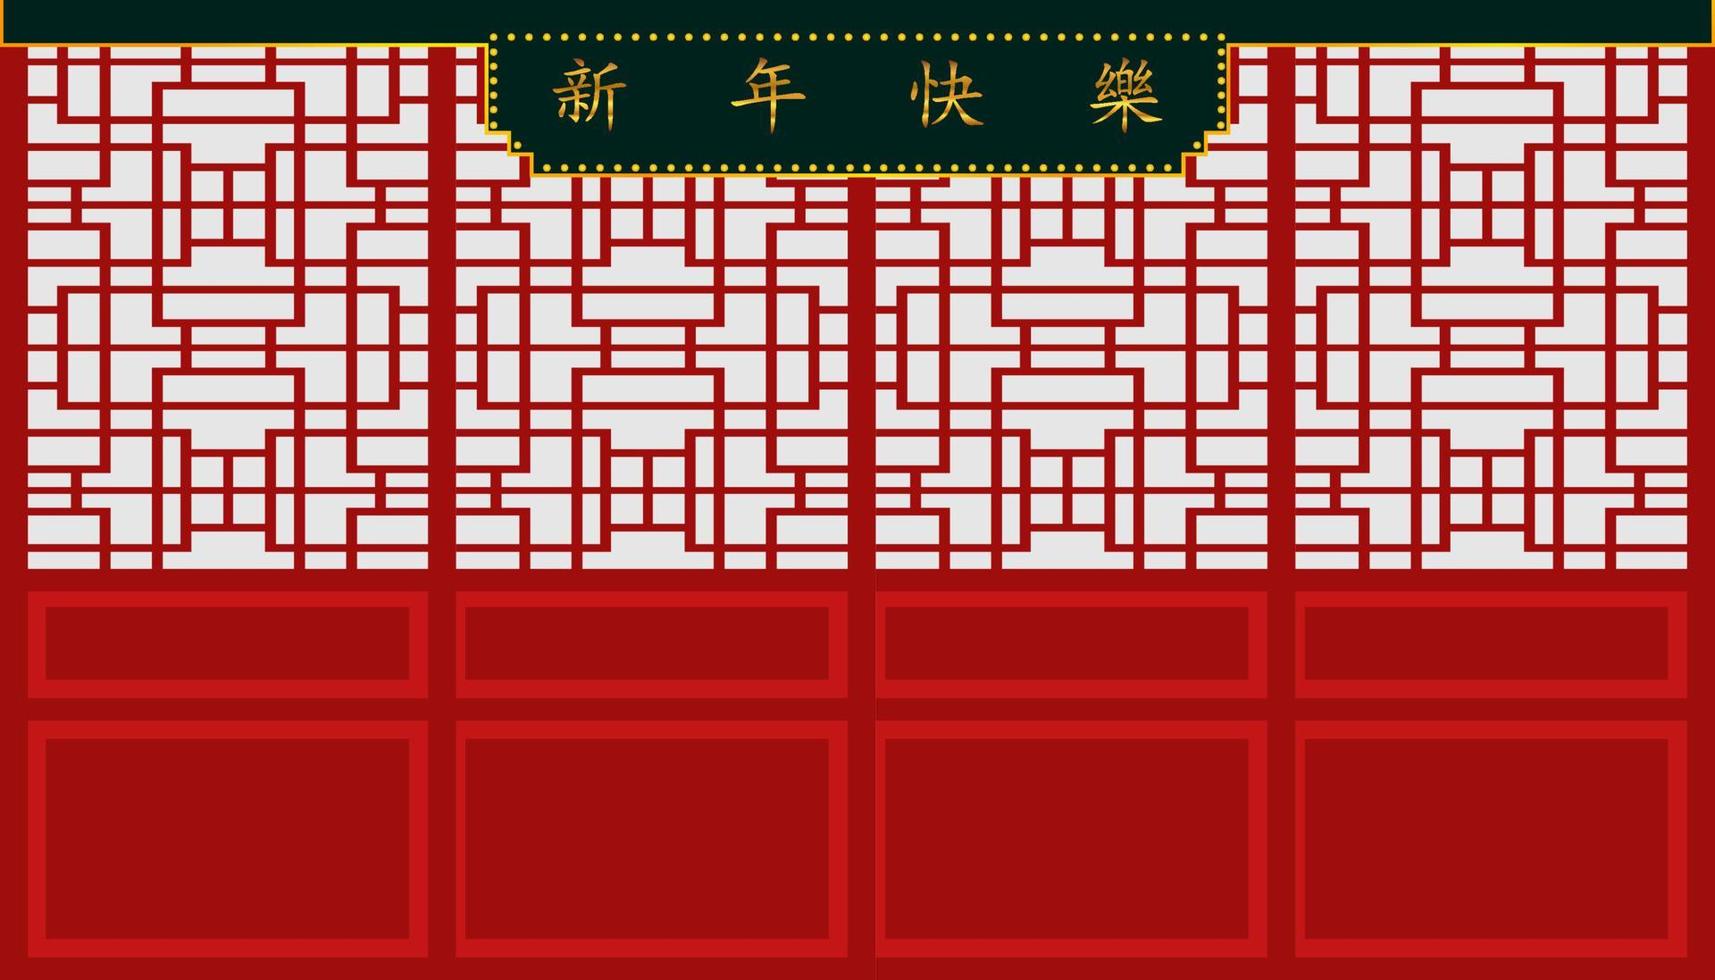 gott kinesiskt nytt år. tecken på xin nian kual le tecken för cny festival och dörr och vägg vackra mönster. semesterkategori. vektor illustration eps10